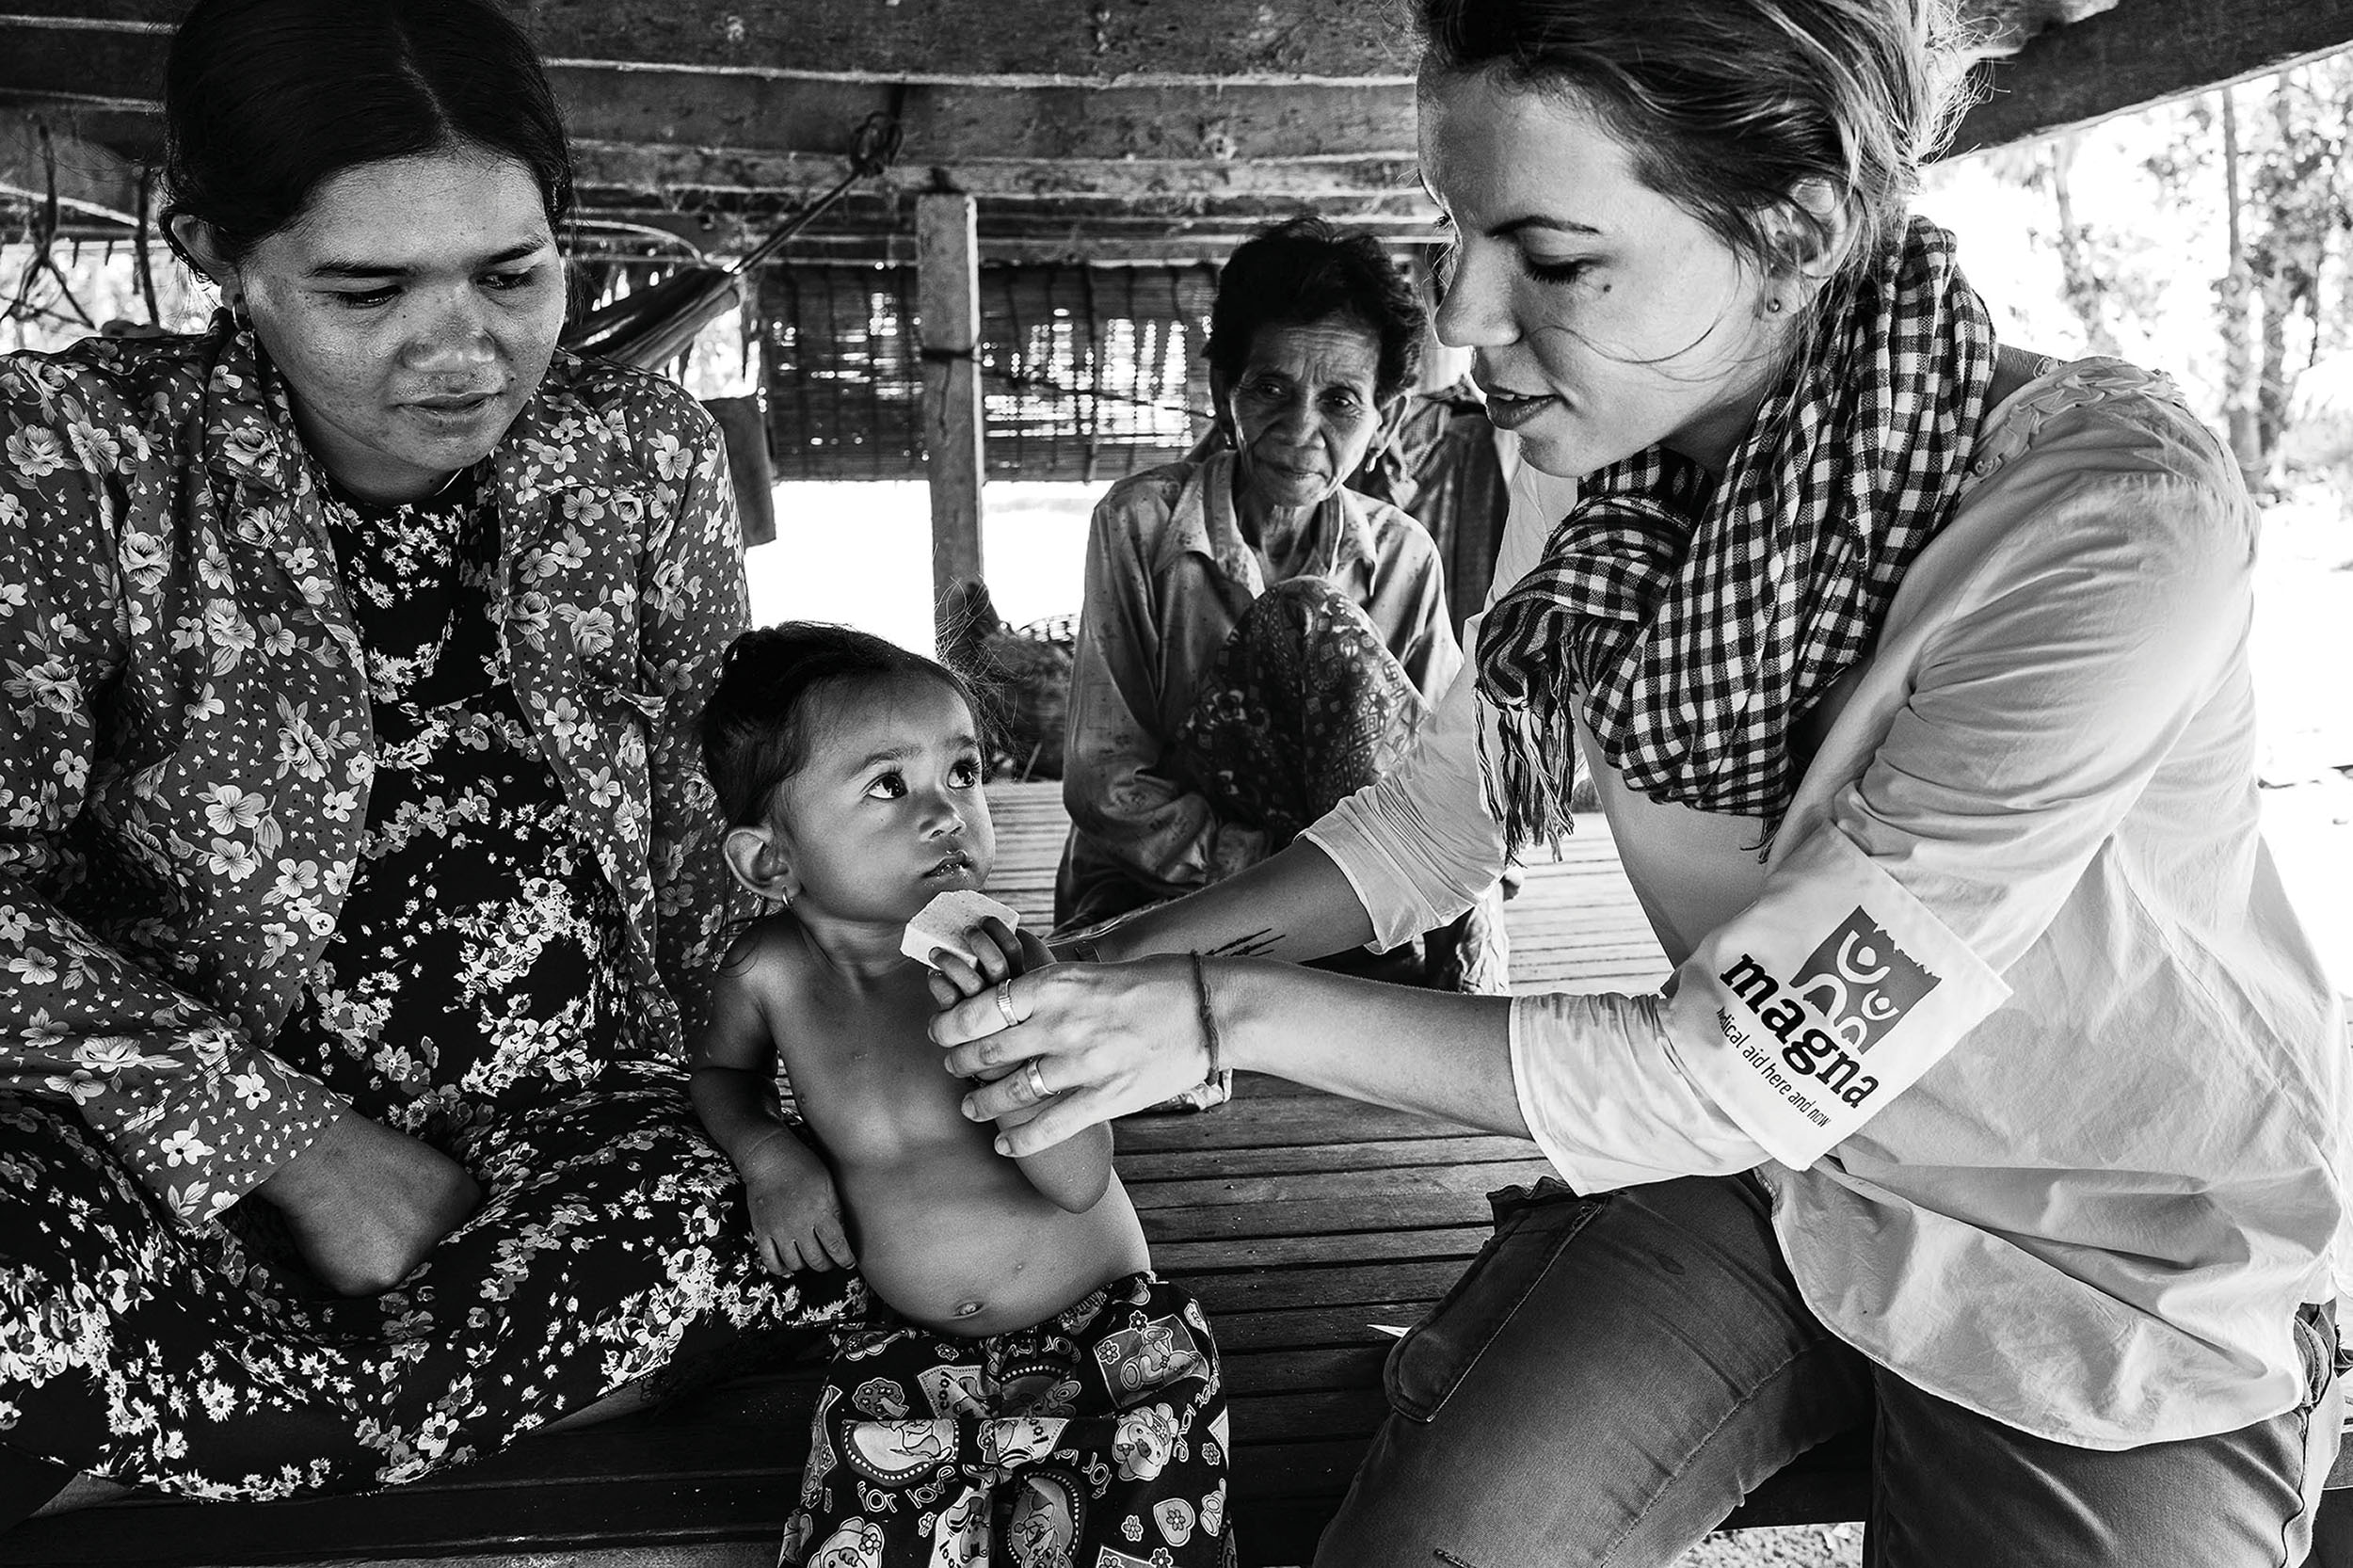 Podvyživené dítě v Kambodži. Více na www.magna.org.